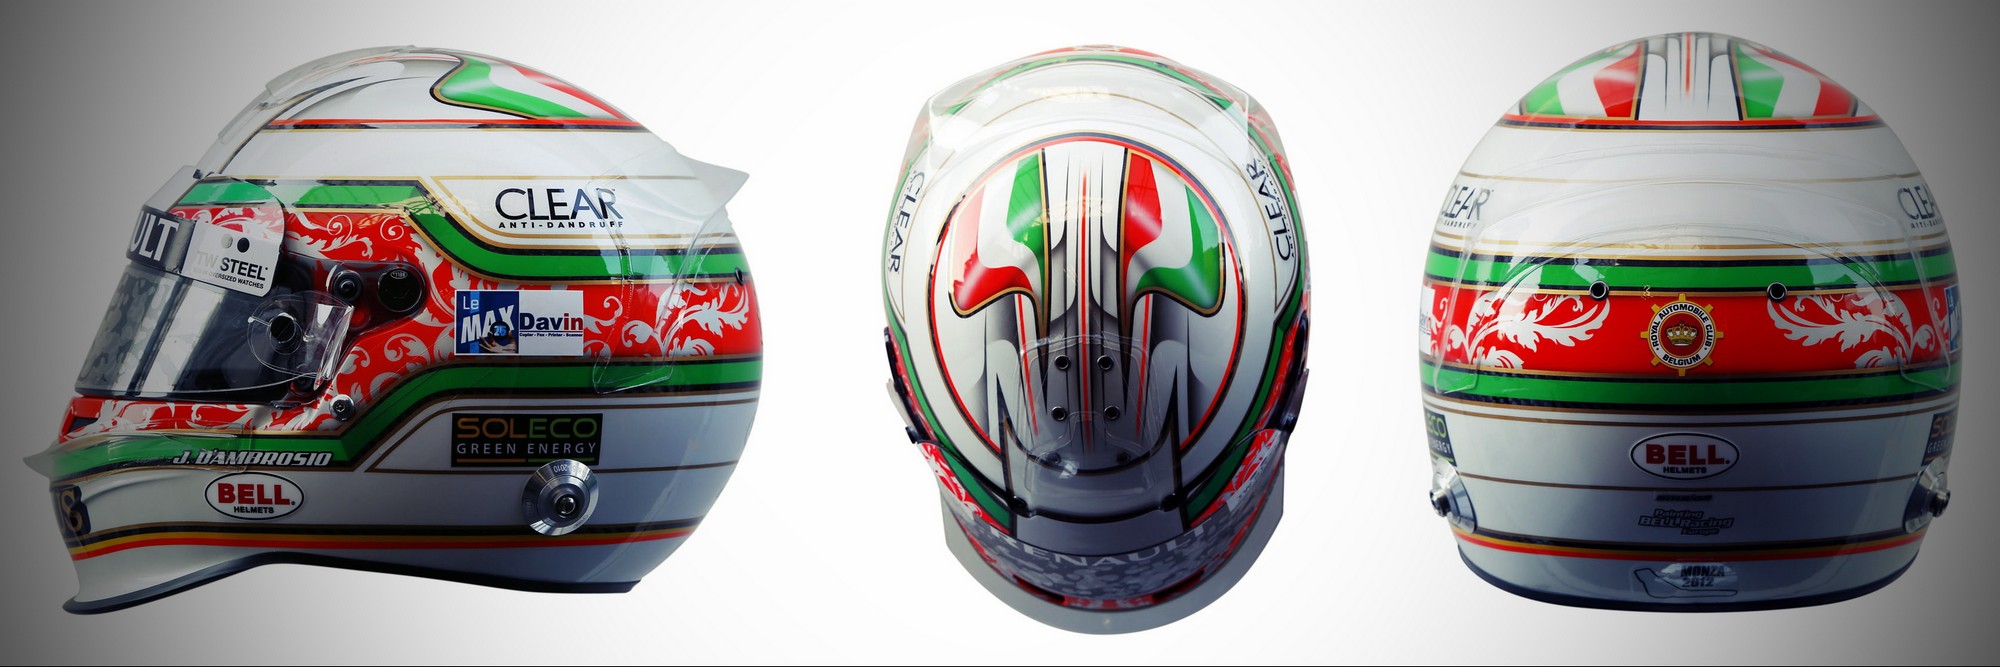 Шлем Жерома д'Амброзио на Гран-При Италии 2012 года | 2012 Italian Grand Prix helmet of Jerome d'Ambrosio